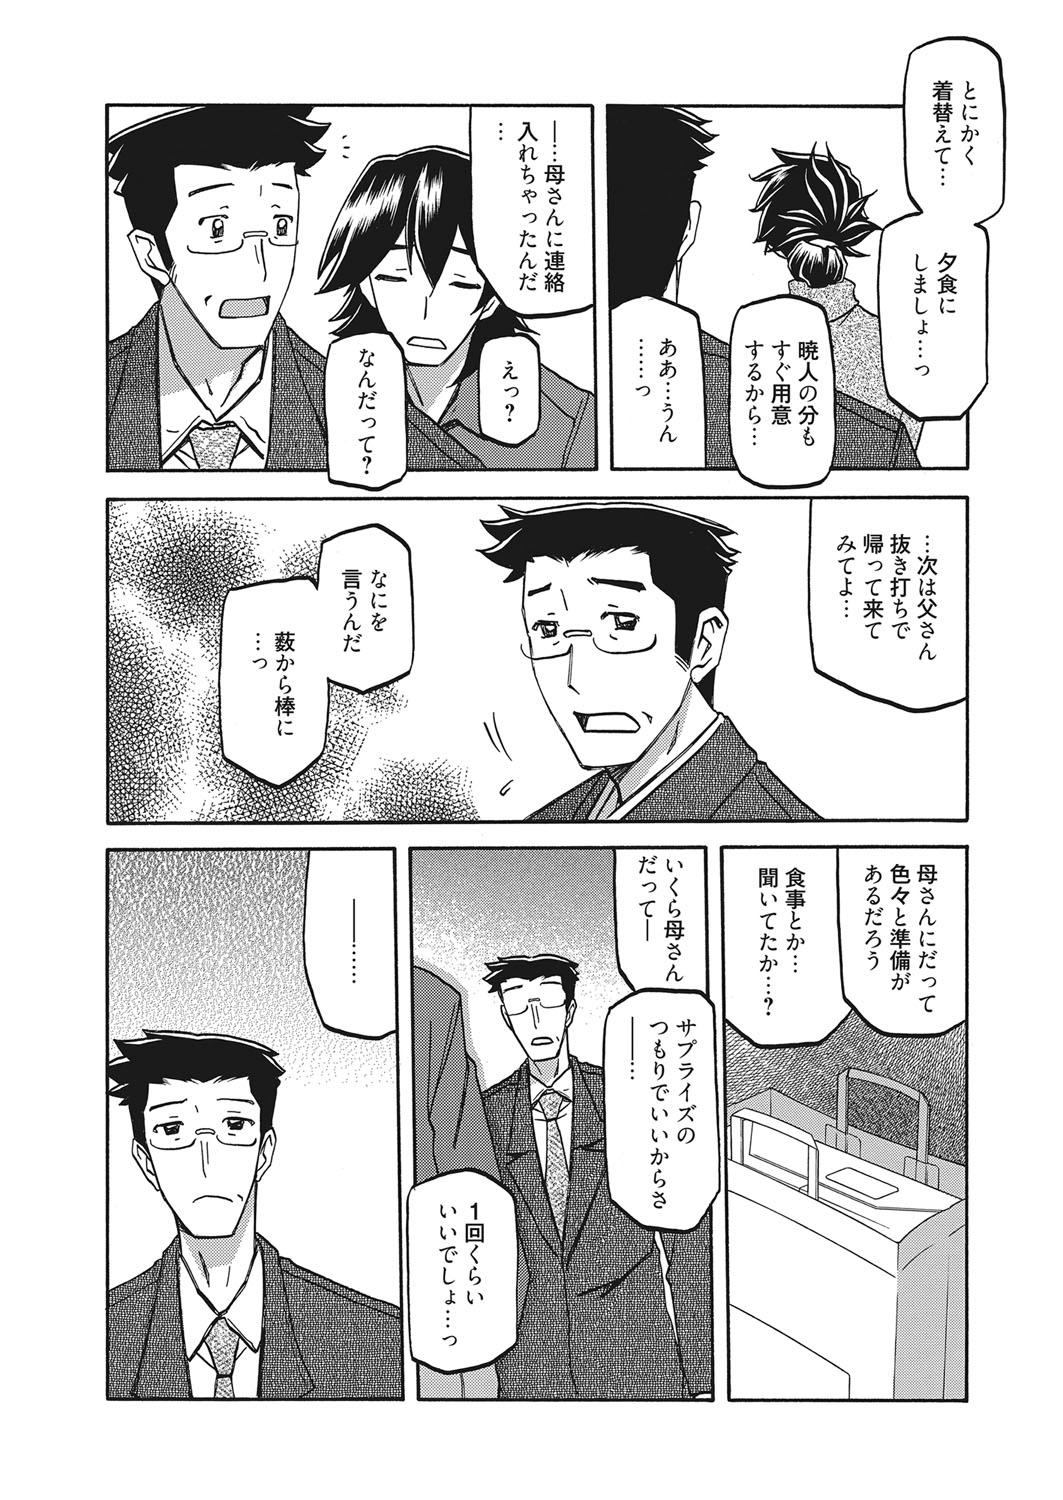 [山文京伝] 月下香の檻 第14話 瞞着 (web 漫画ばんがいち Vol.7)